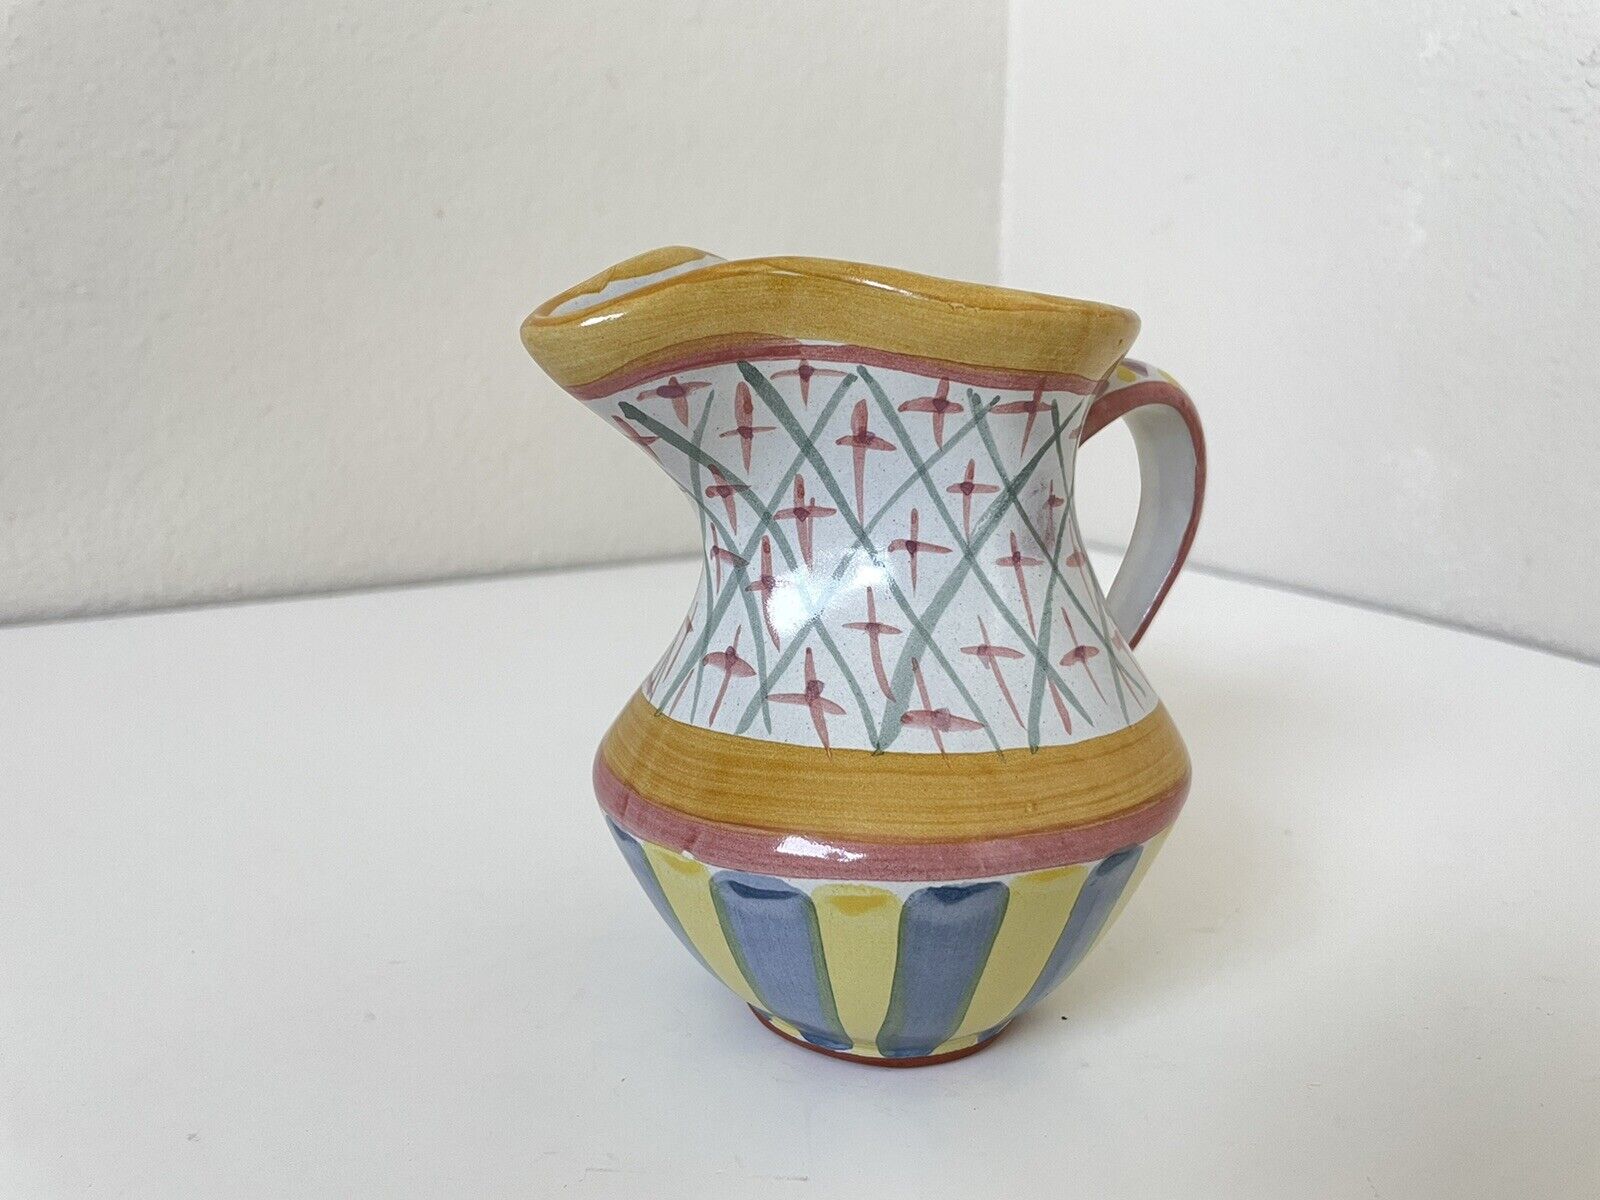 Victoria Richard Mackenzie Childs Monet Pitcher Bowl Vase Ceramic Mid Century